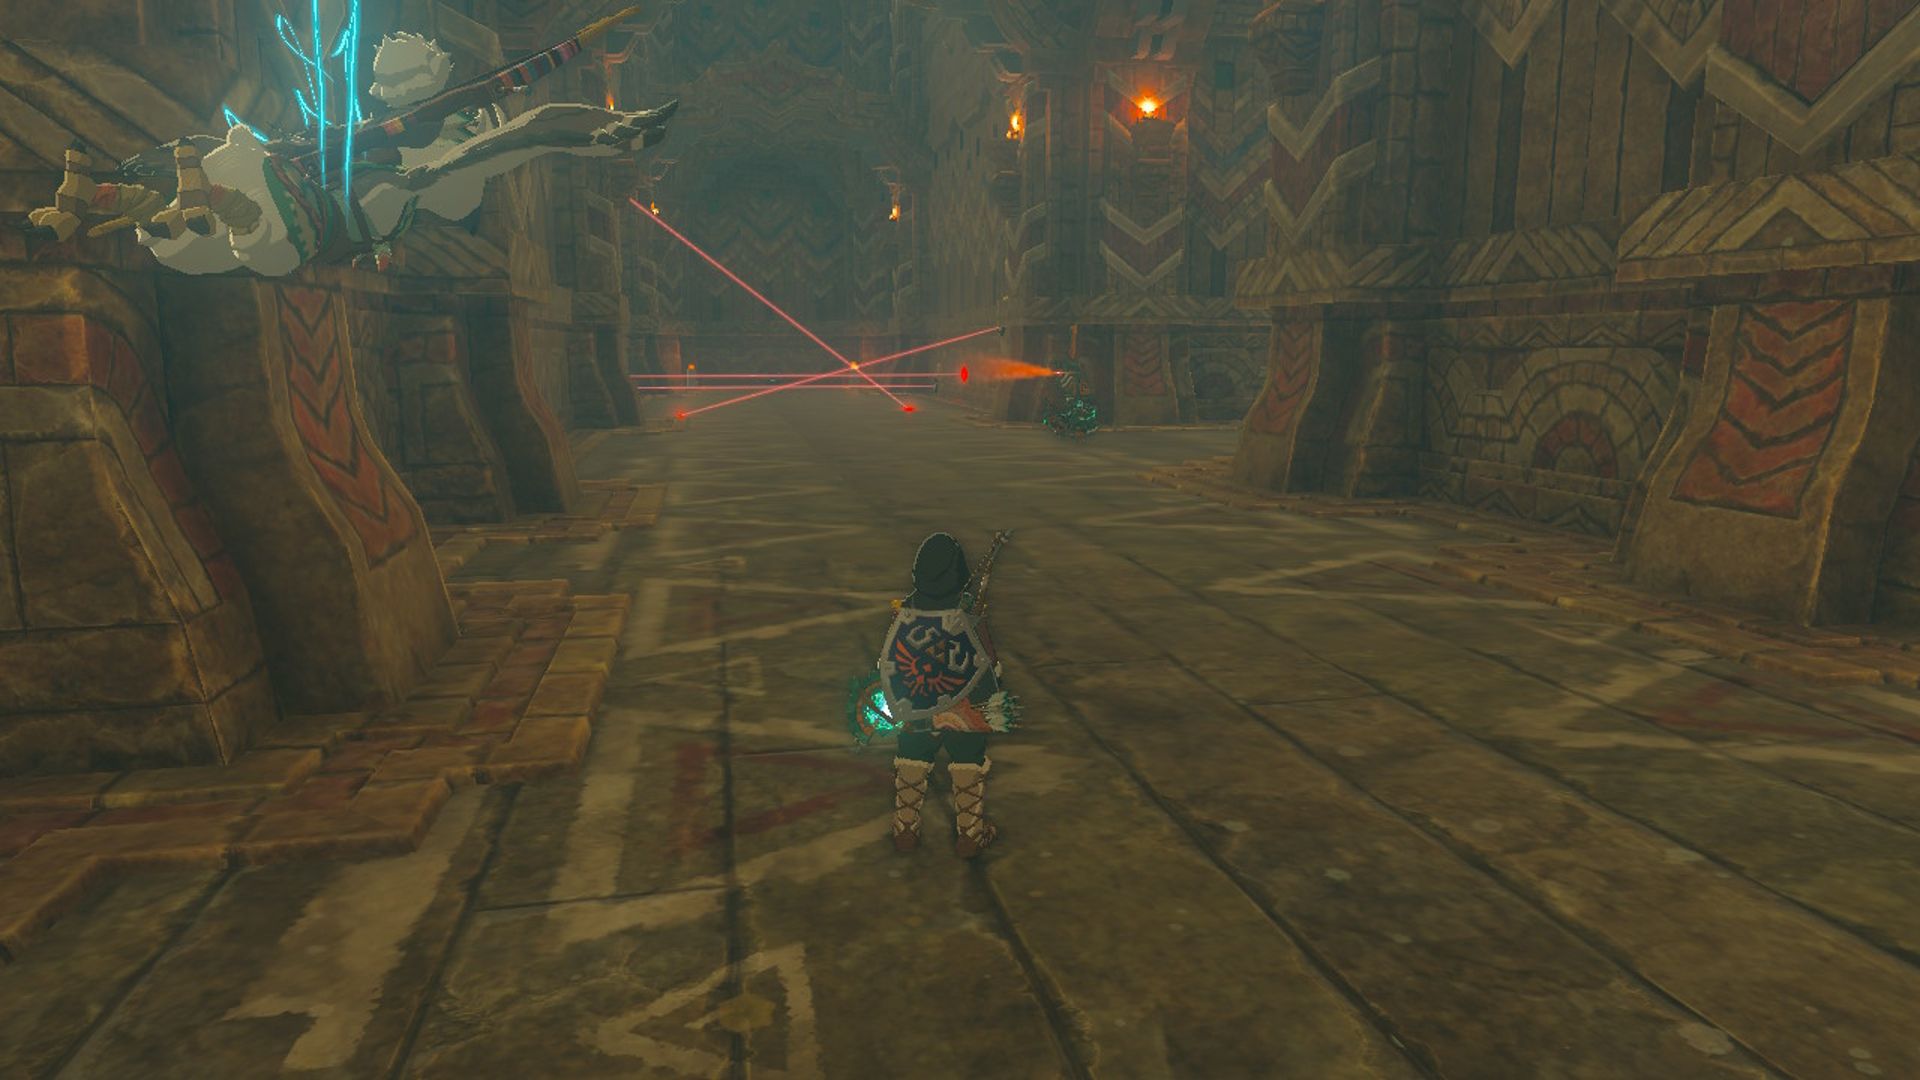 The Legend Of Zelda Air Mata Tautan Kerajaan Melihat Ke Bawah Lorong Kuil Angin Di Dada Dan Bangunan Bermusuhan